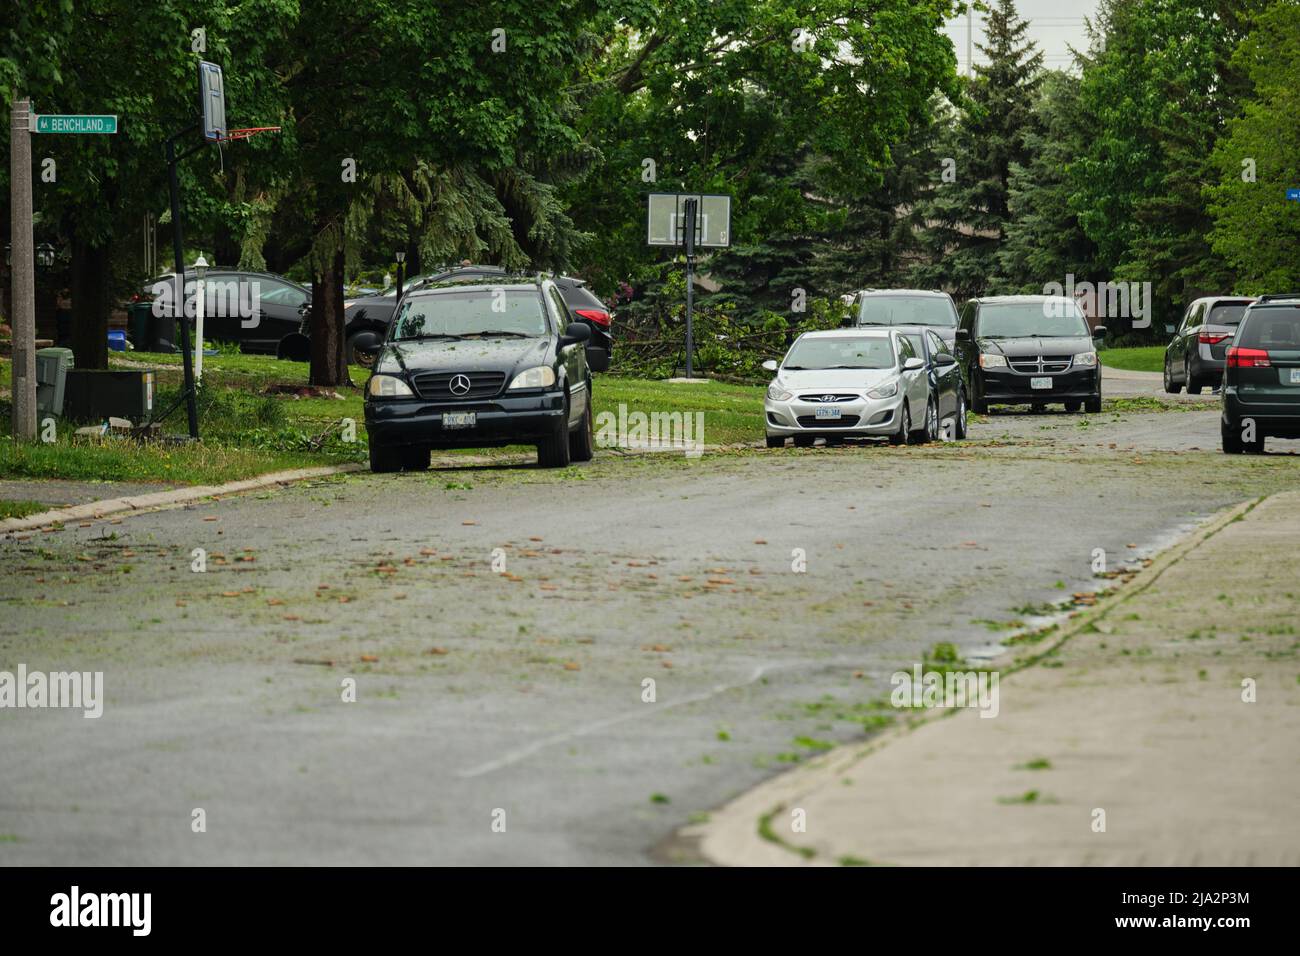 Ottawa, Ontario, Canada - 21 maggio 2022: Foglie e altri detriti sono sparsi attraverso una strada suburbana a Barrhaven dopo una potente tempesta ha causato dama Foto Stock